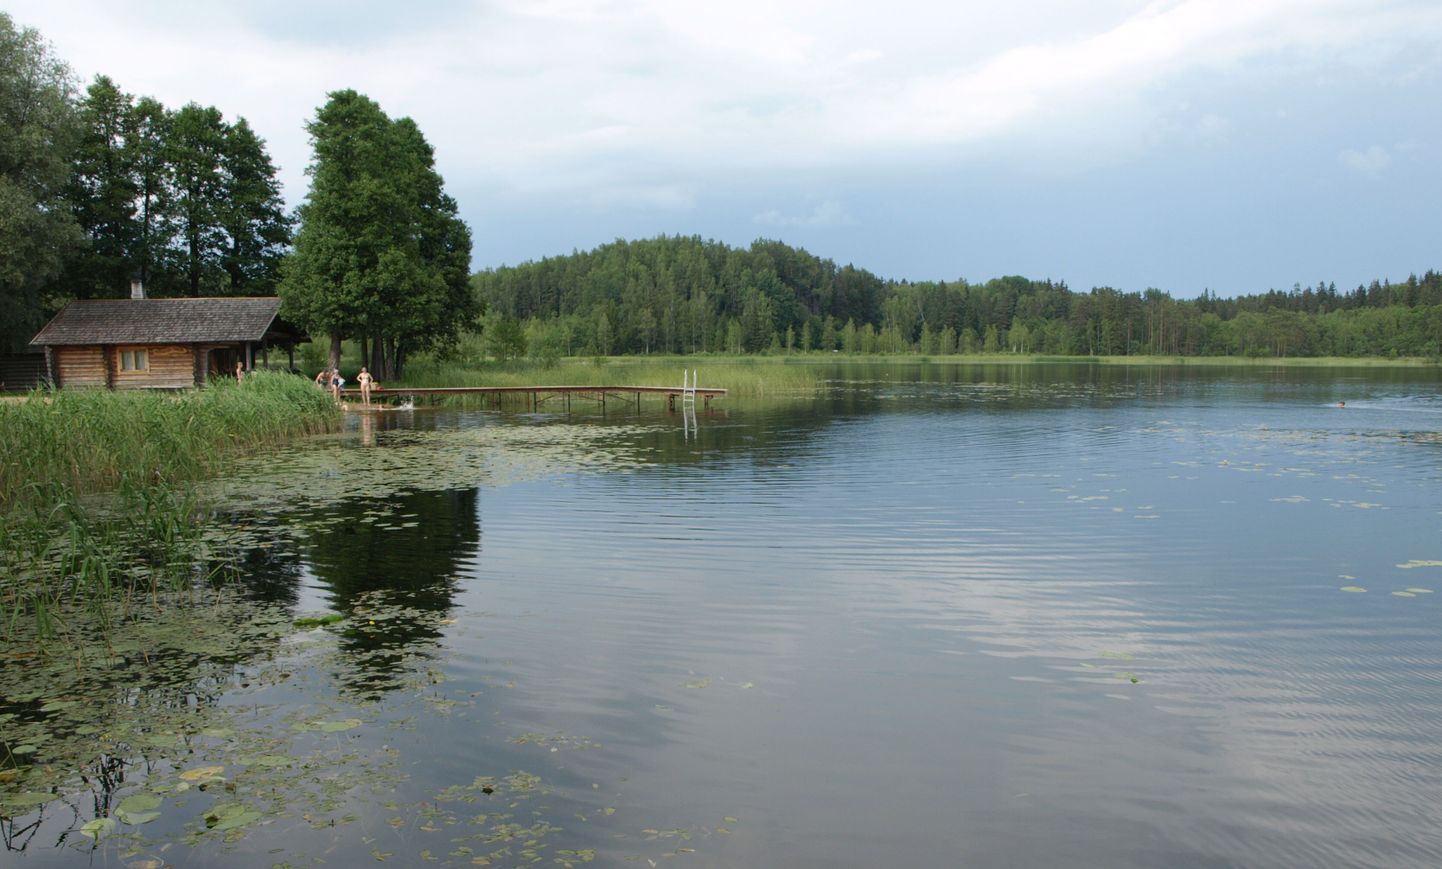 Kääriku, kus Metsaülikool Eestis suviti toimub.